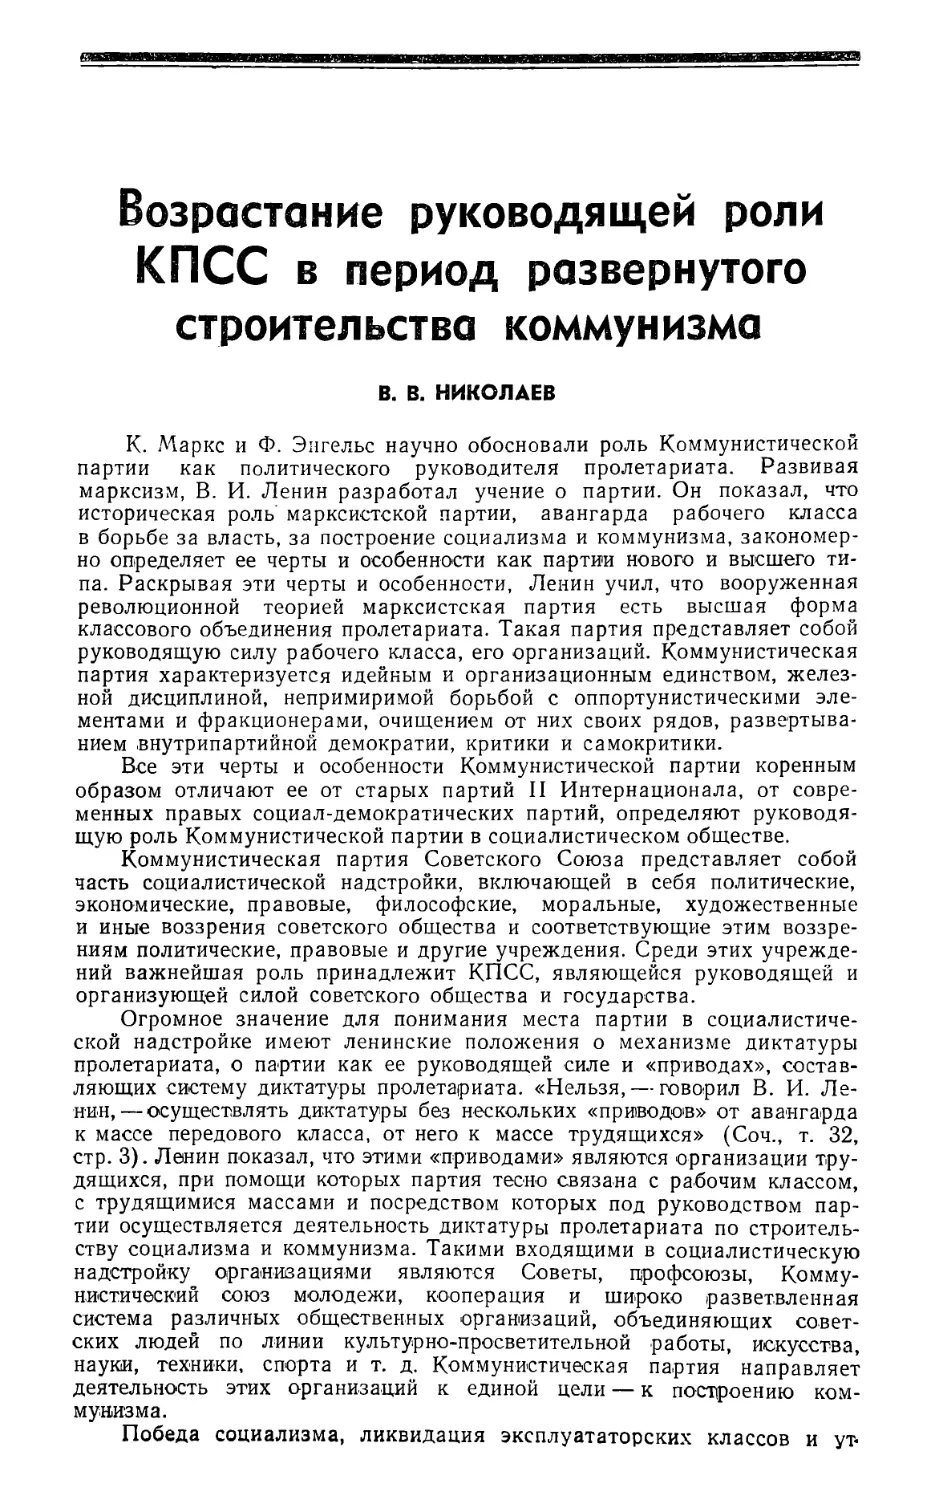 В. В. Николаев — Возрастание руководящей роли КПСС в период развернутого строительства коммунизма